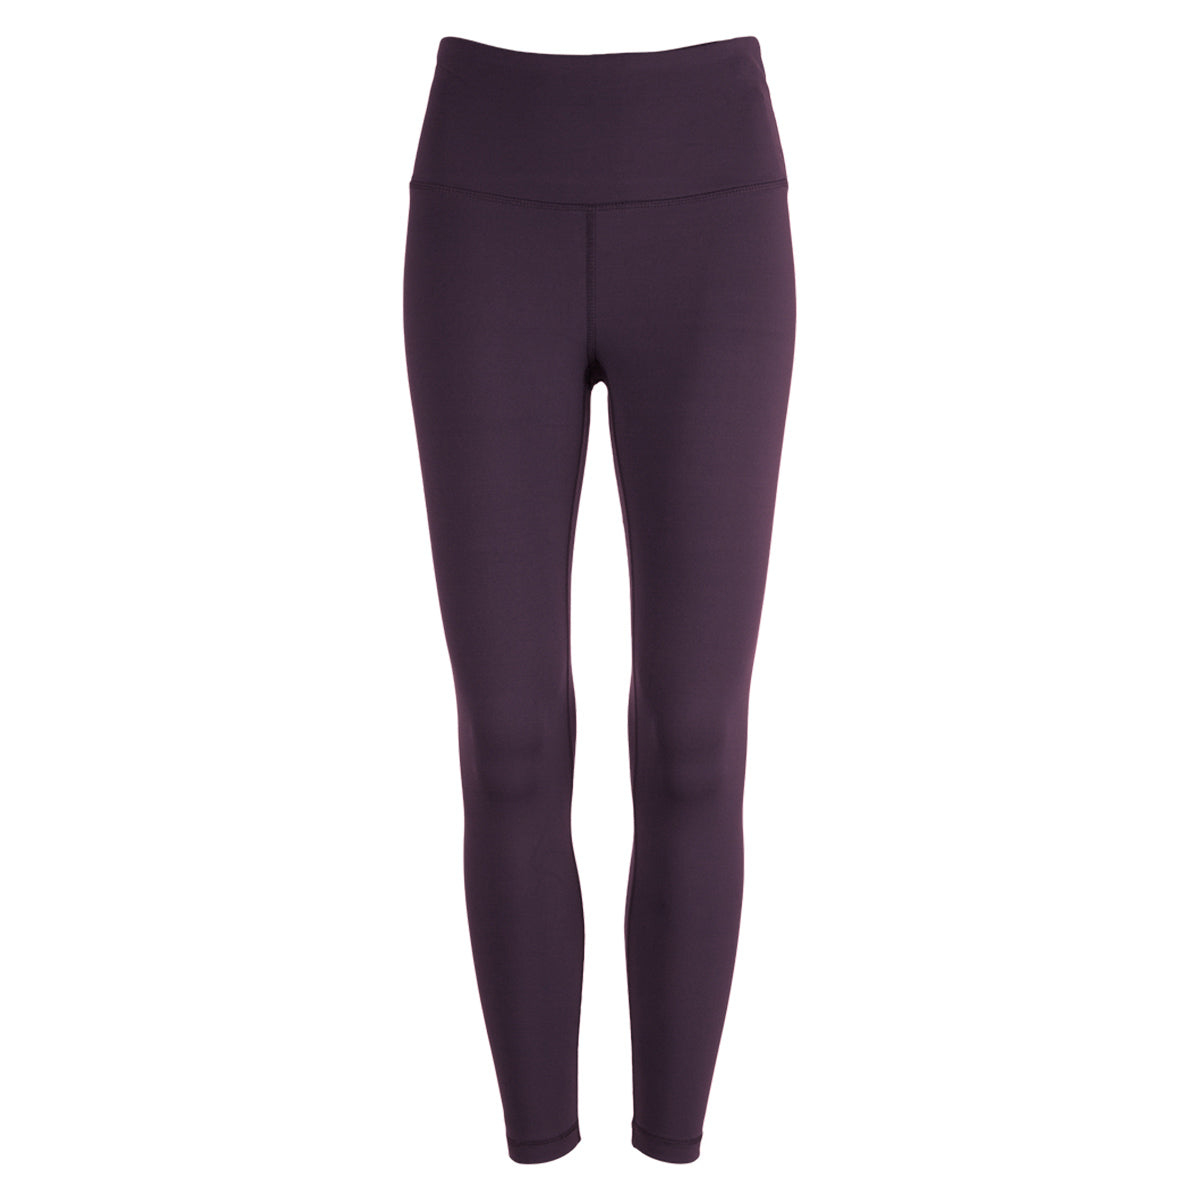 Kyodan Women's Mid Rise Leggings Full Length Leggings Pockets Purple Black  Small - $18 - From Kyler